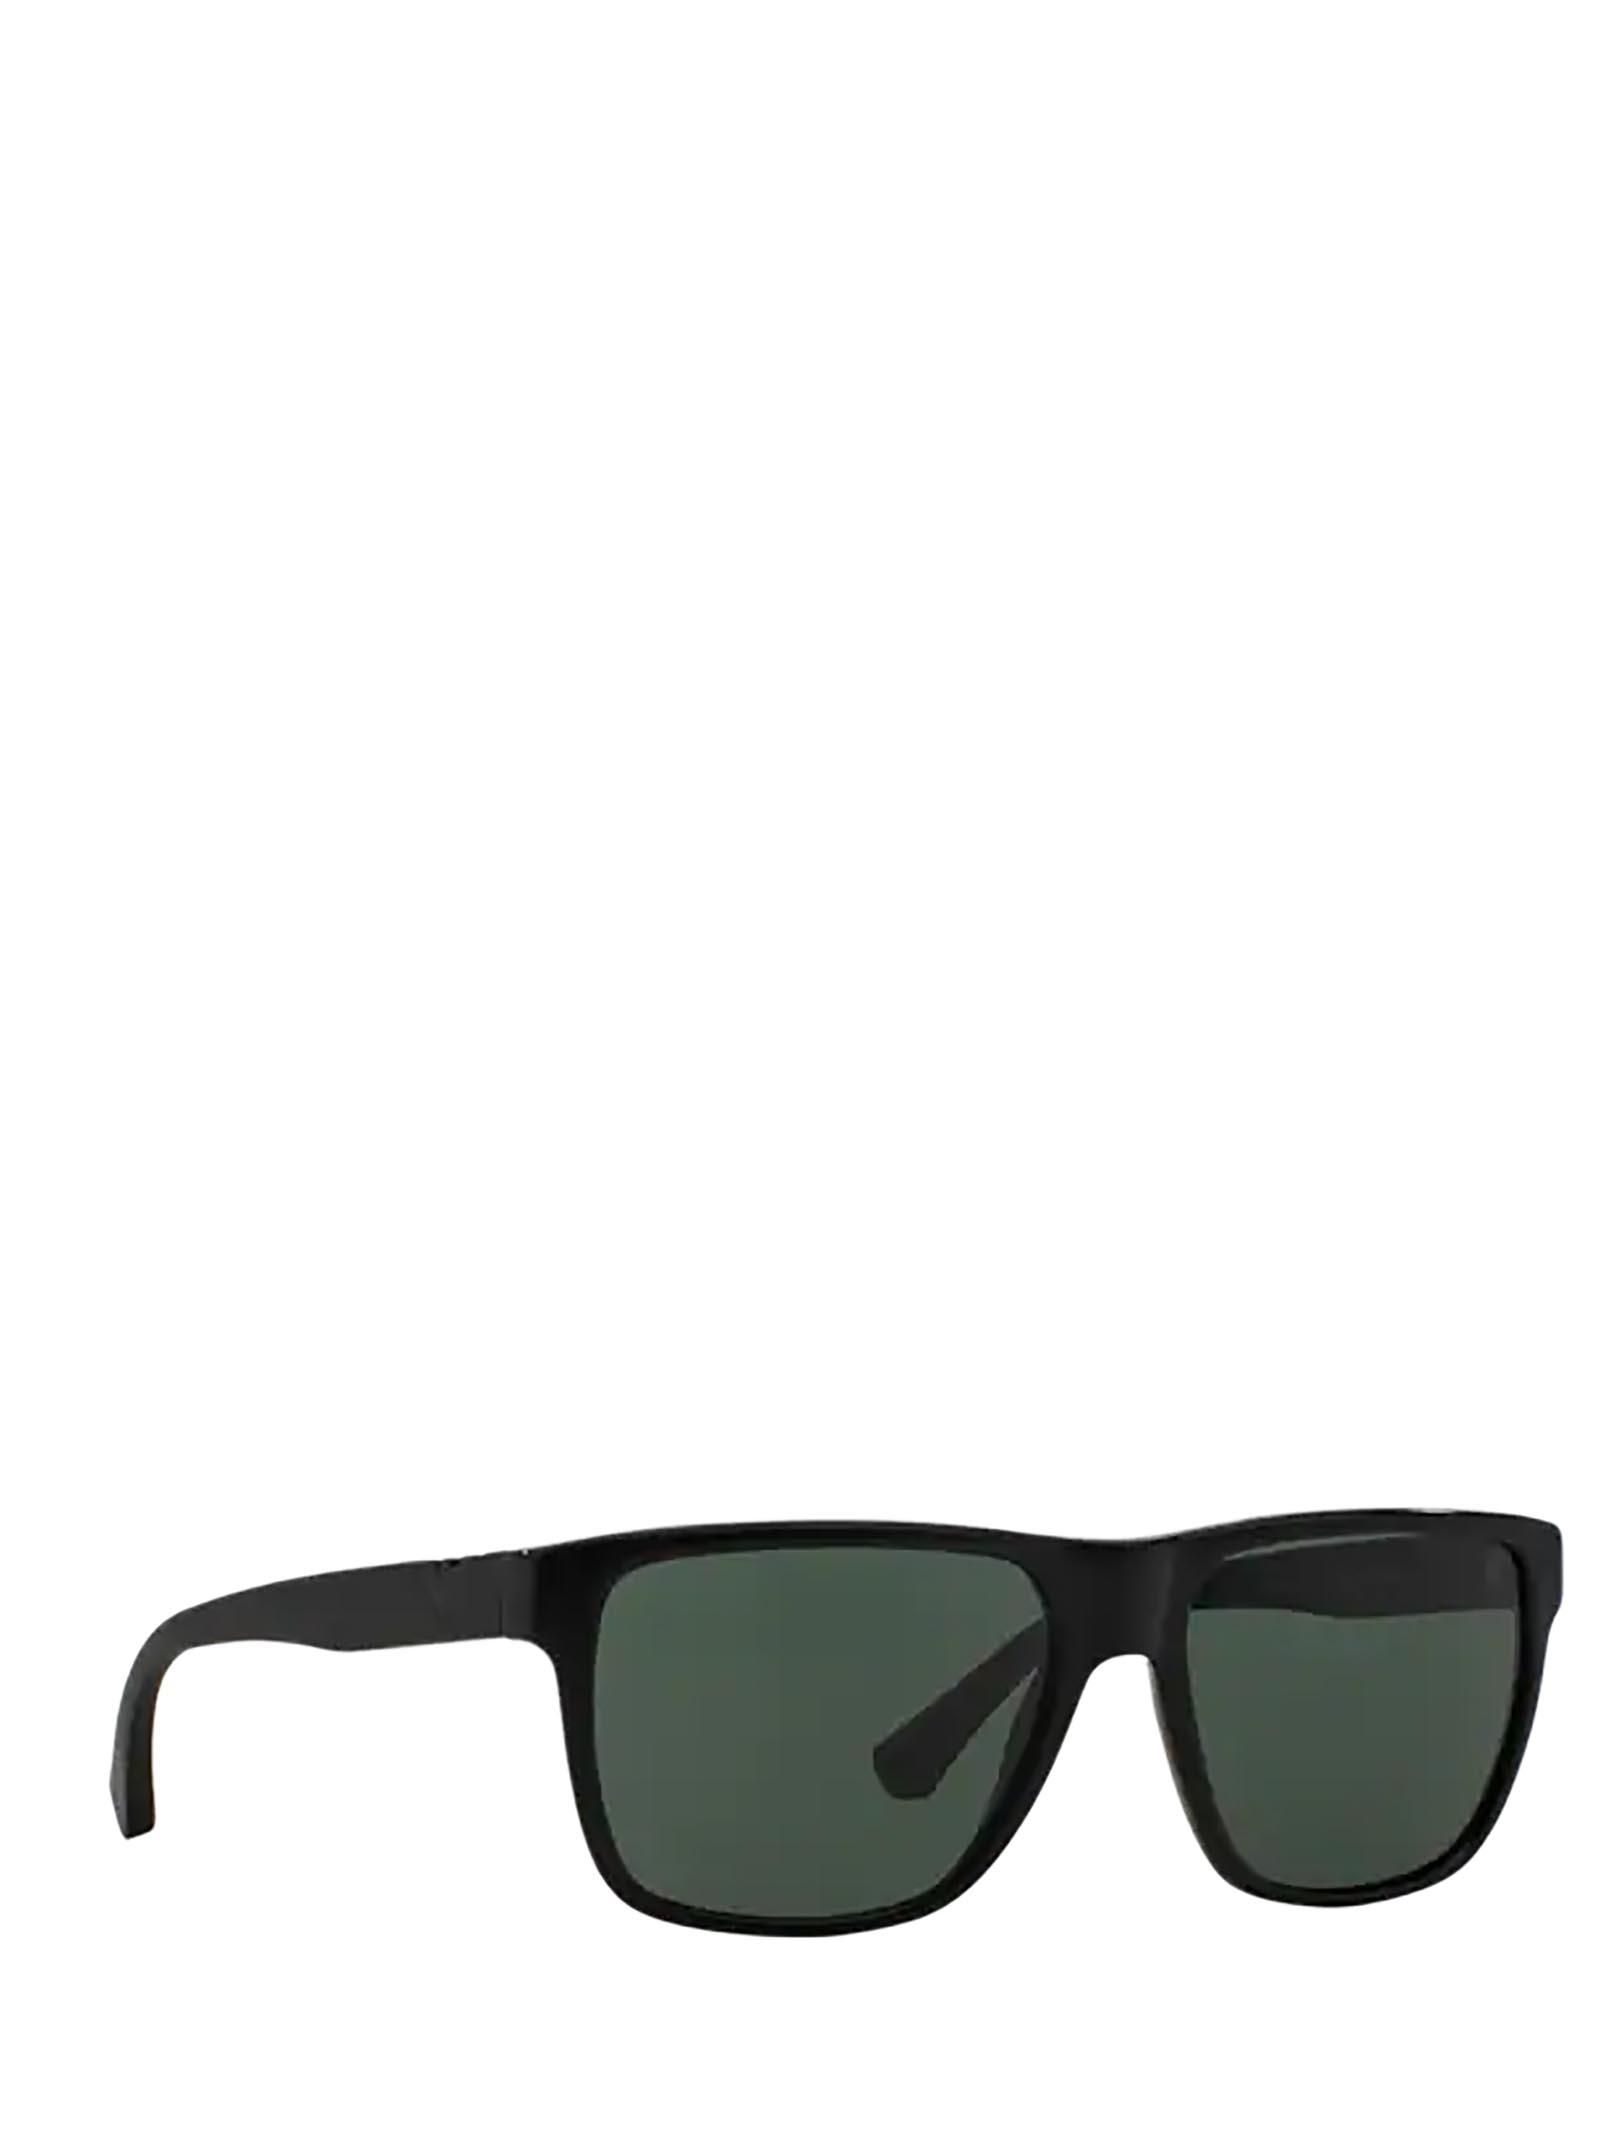 Emporio Armani Sunglasses in Shiny Black (Black) for Men - Save 34% | Lyst